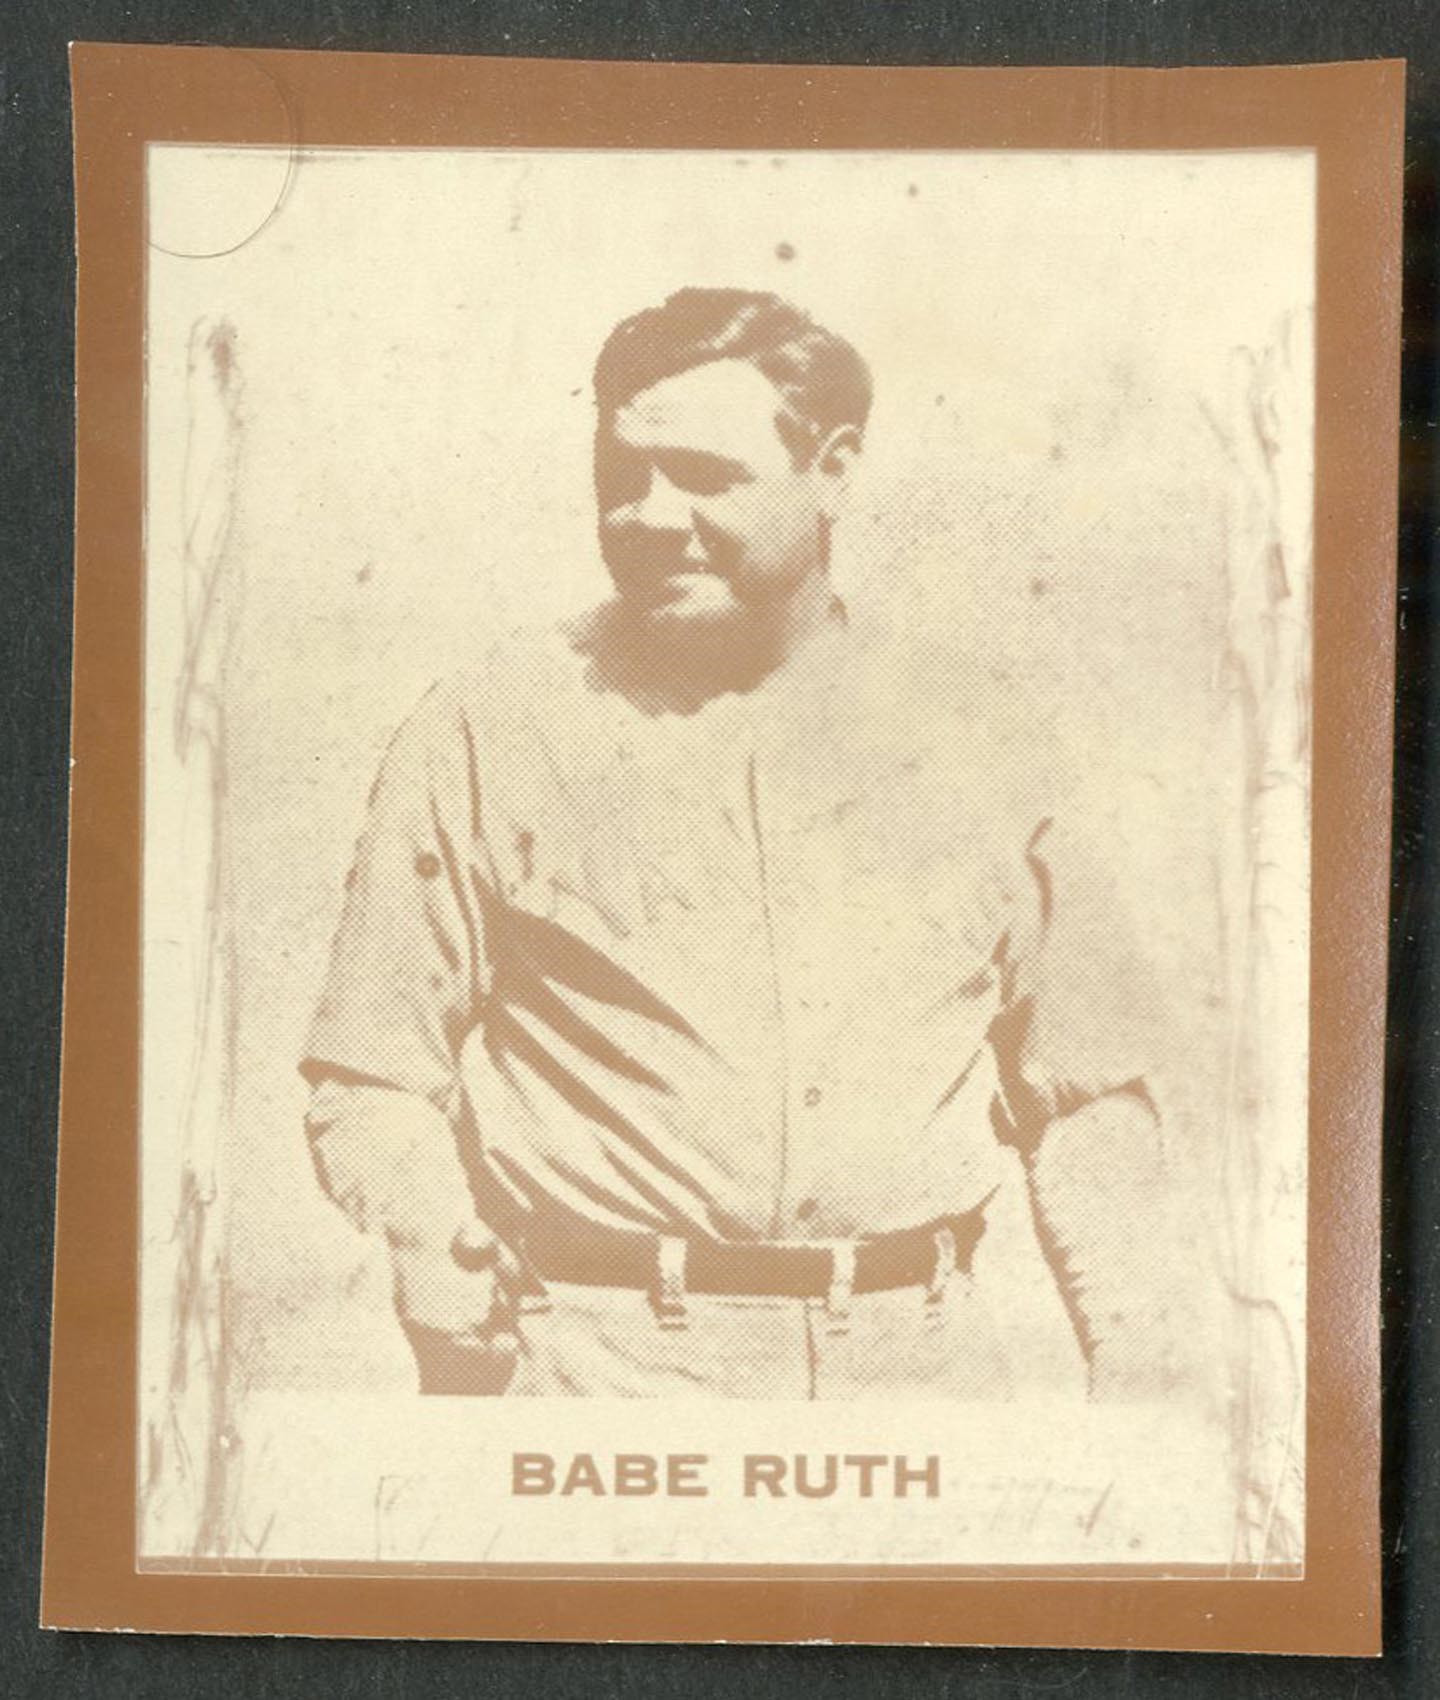 Baseball and Trading Cards - 1930 Ray-o-Print Babe Ruth - RARE!